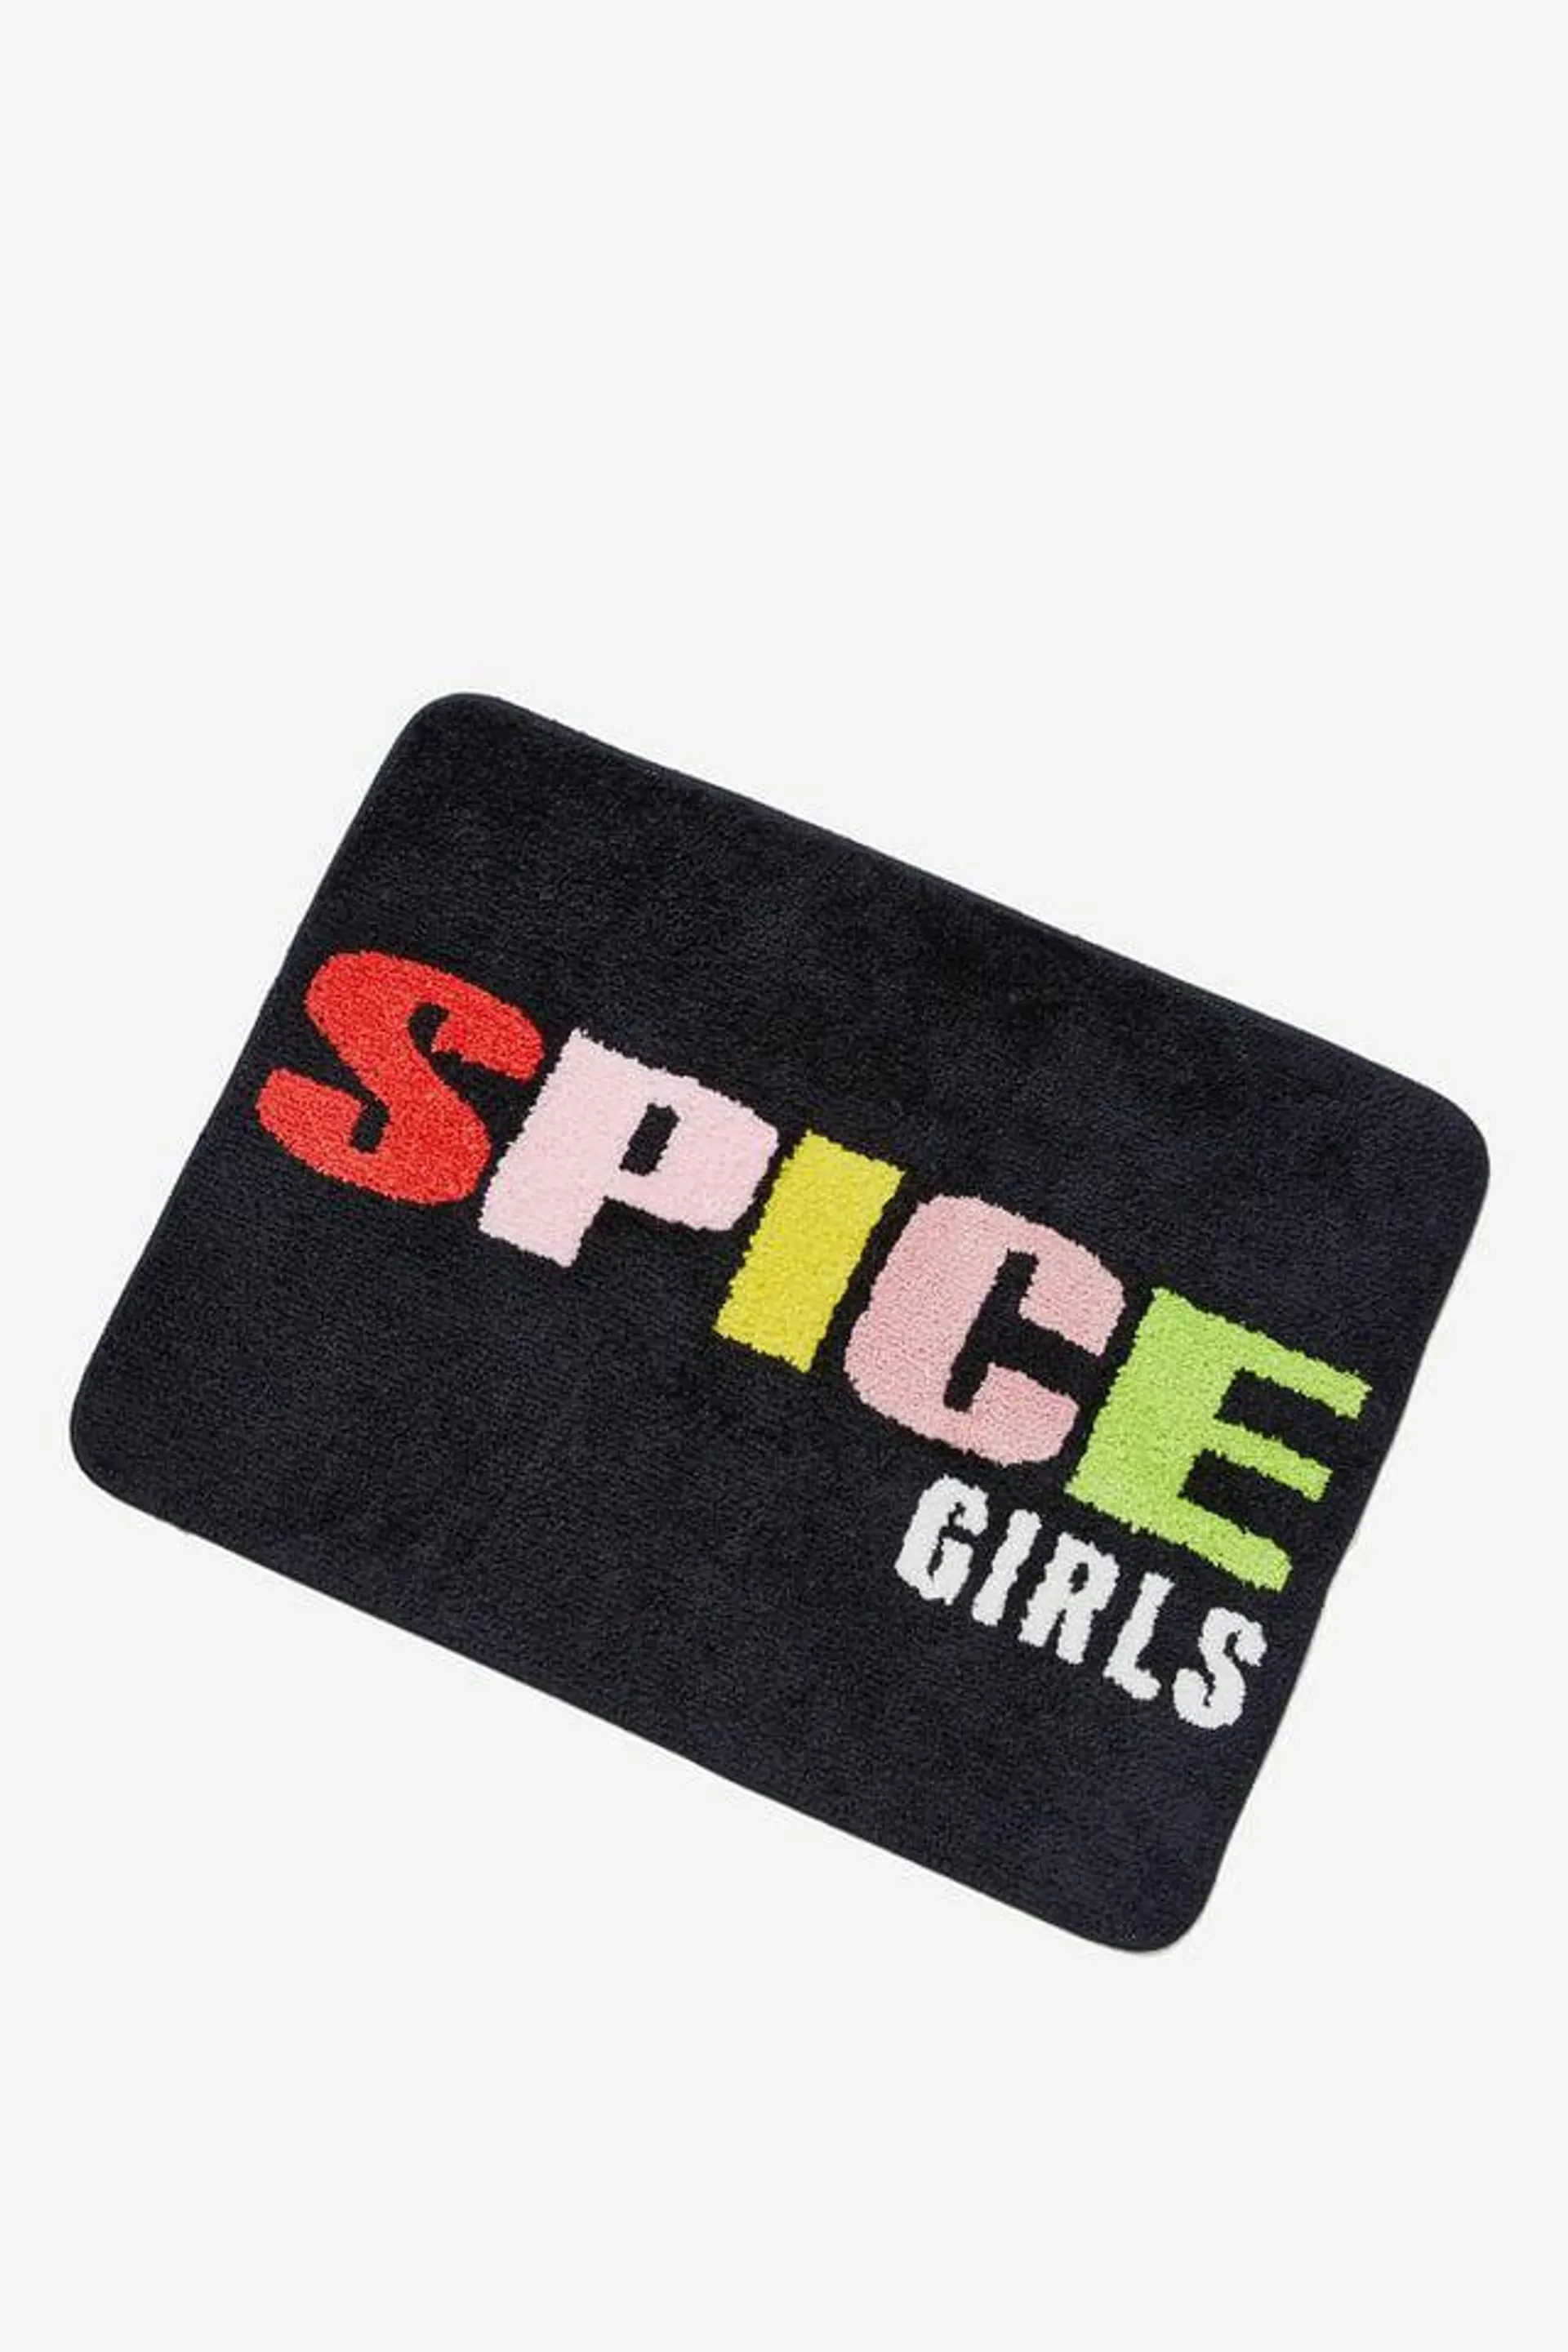 Spice Girls Floor Rug